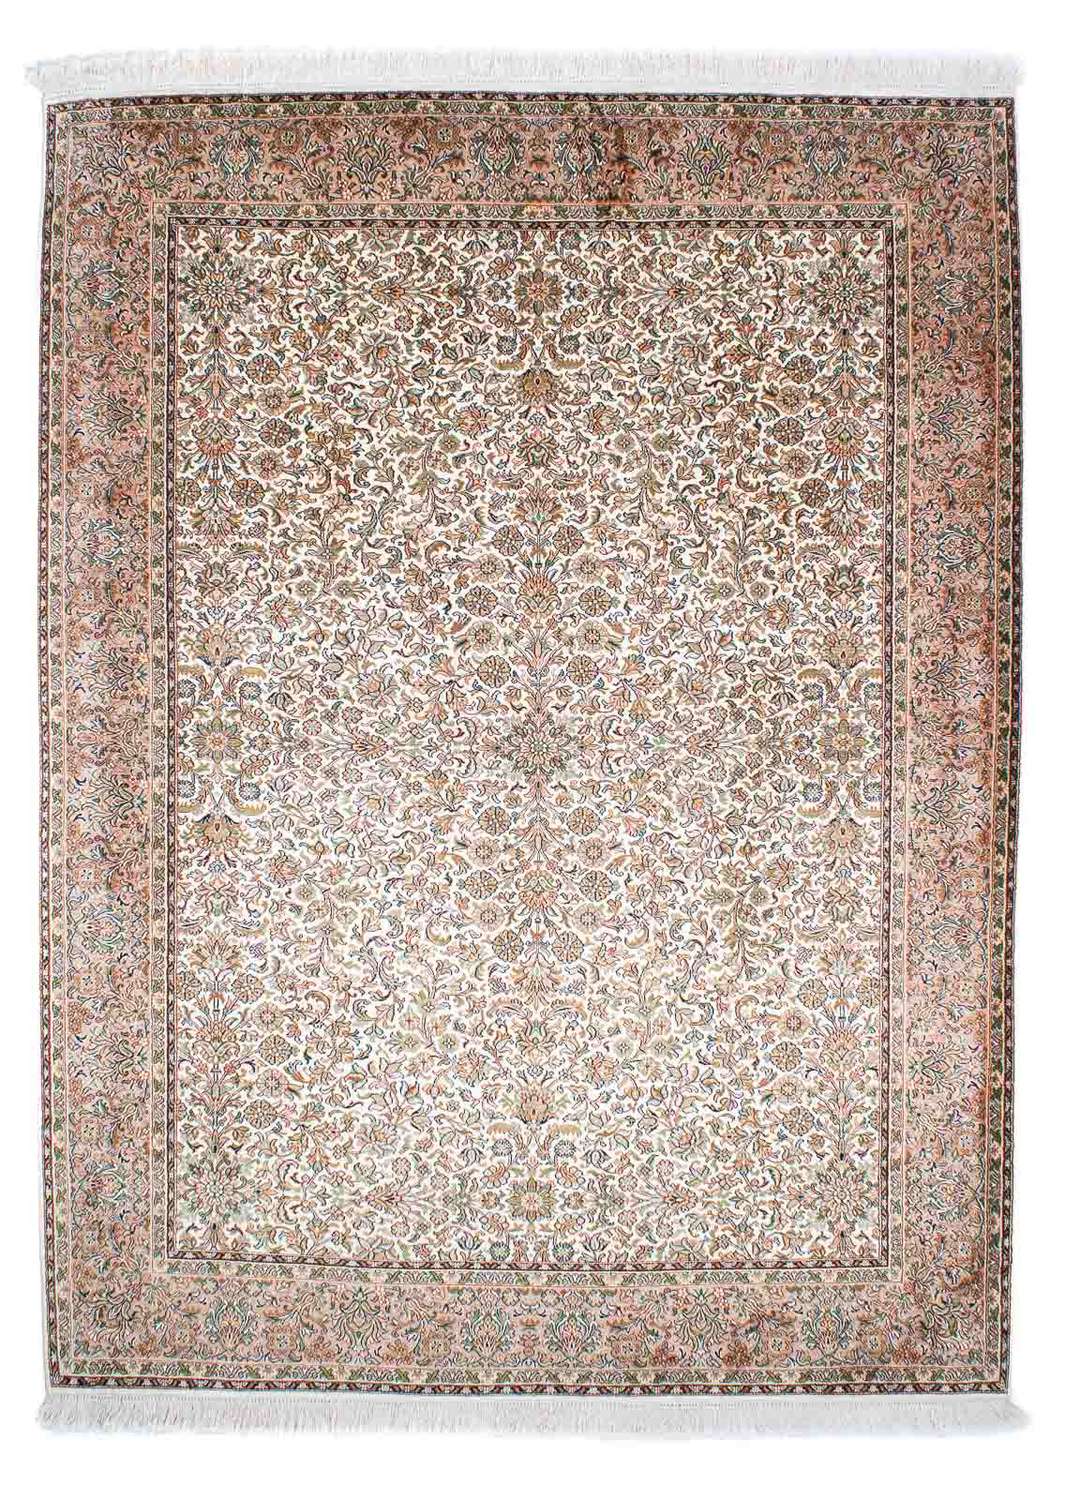 Dywan perski - Klasyczny - 242 x 177 cm - beżowy